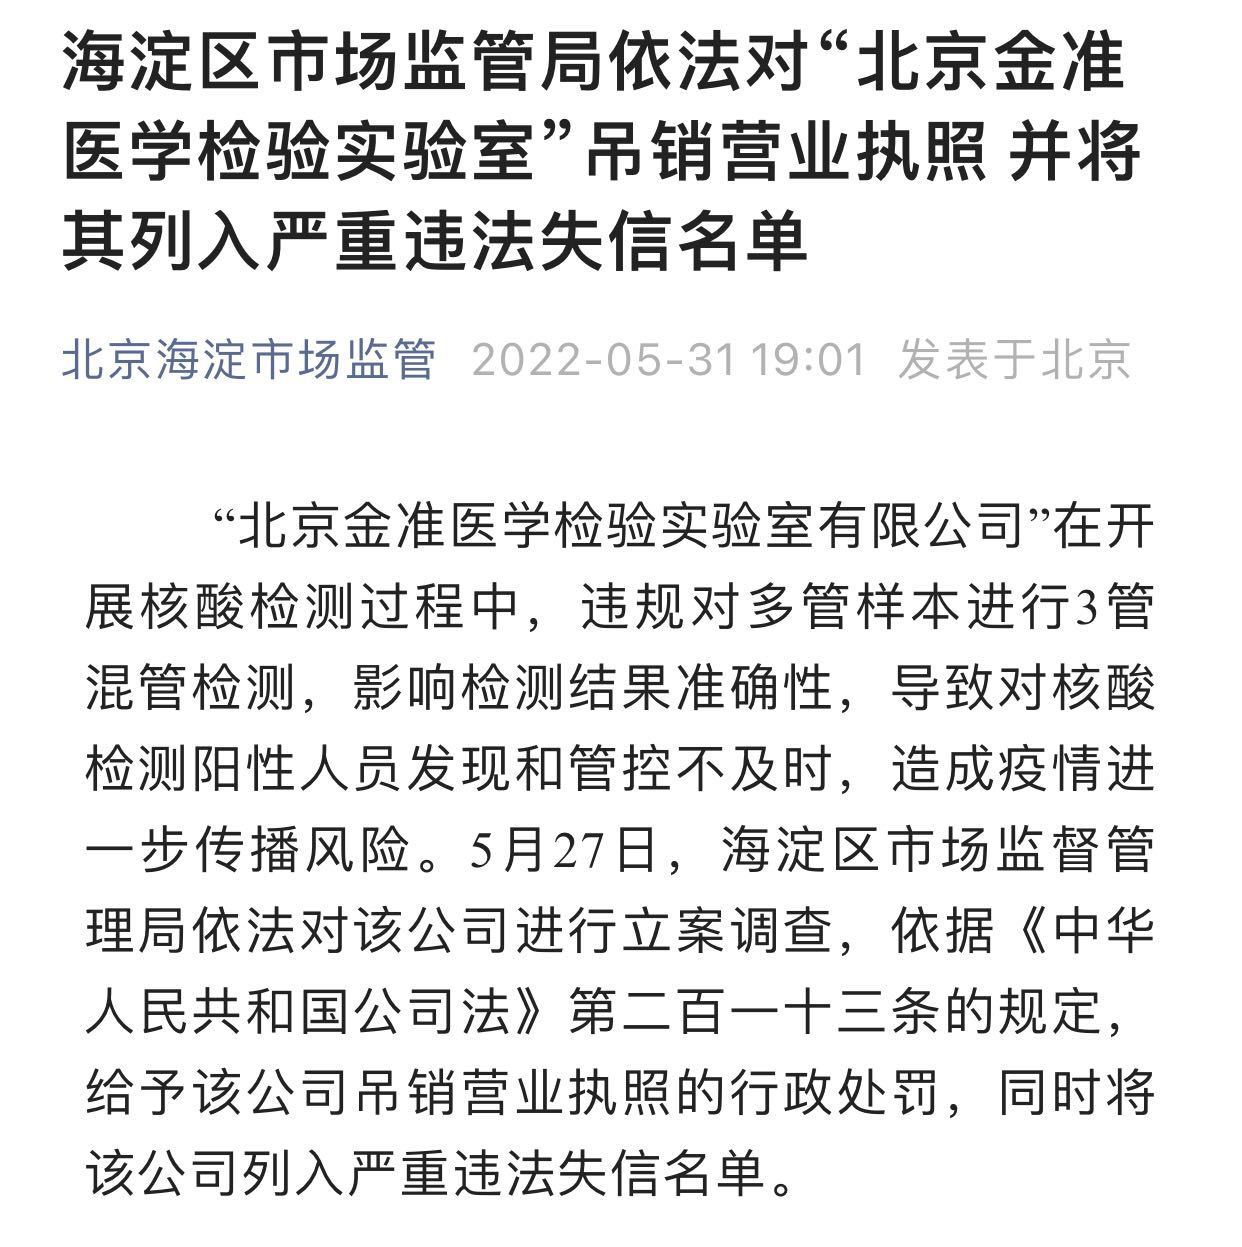 龙圩检察依法批准逮捕一名涉嫌妨害疫情防控的犯罪嫌疑人 - 公诉人 - 龙圩区人民检察院